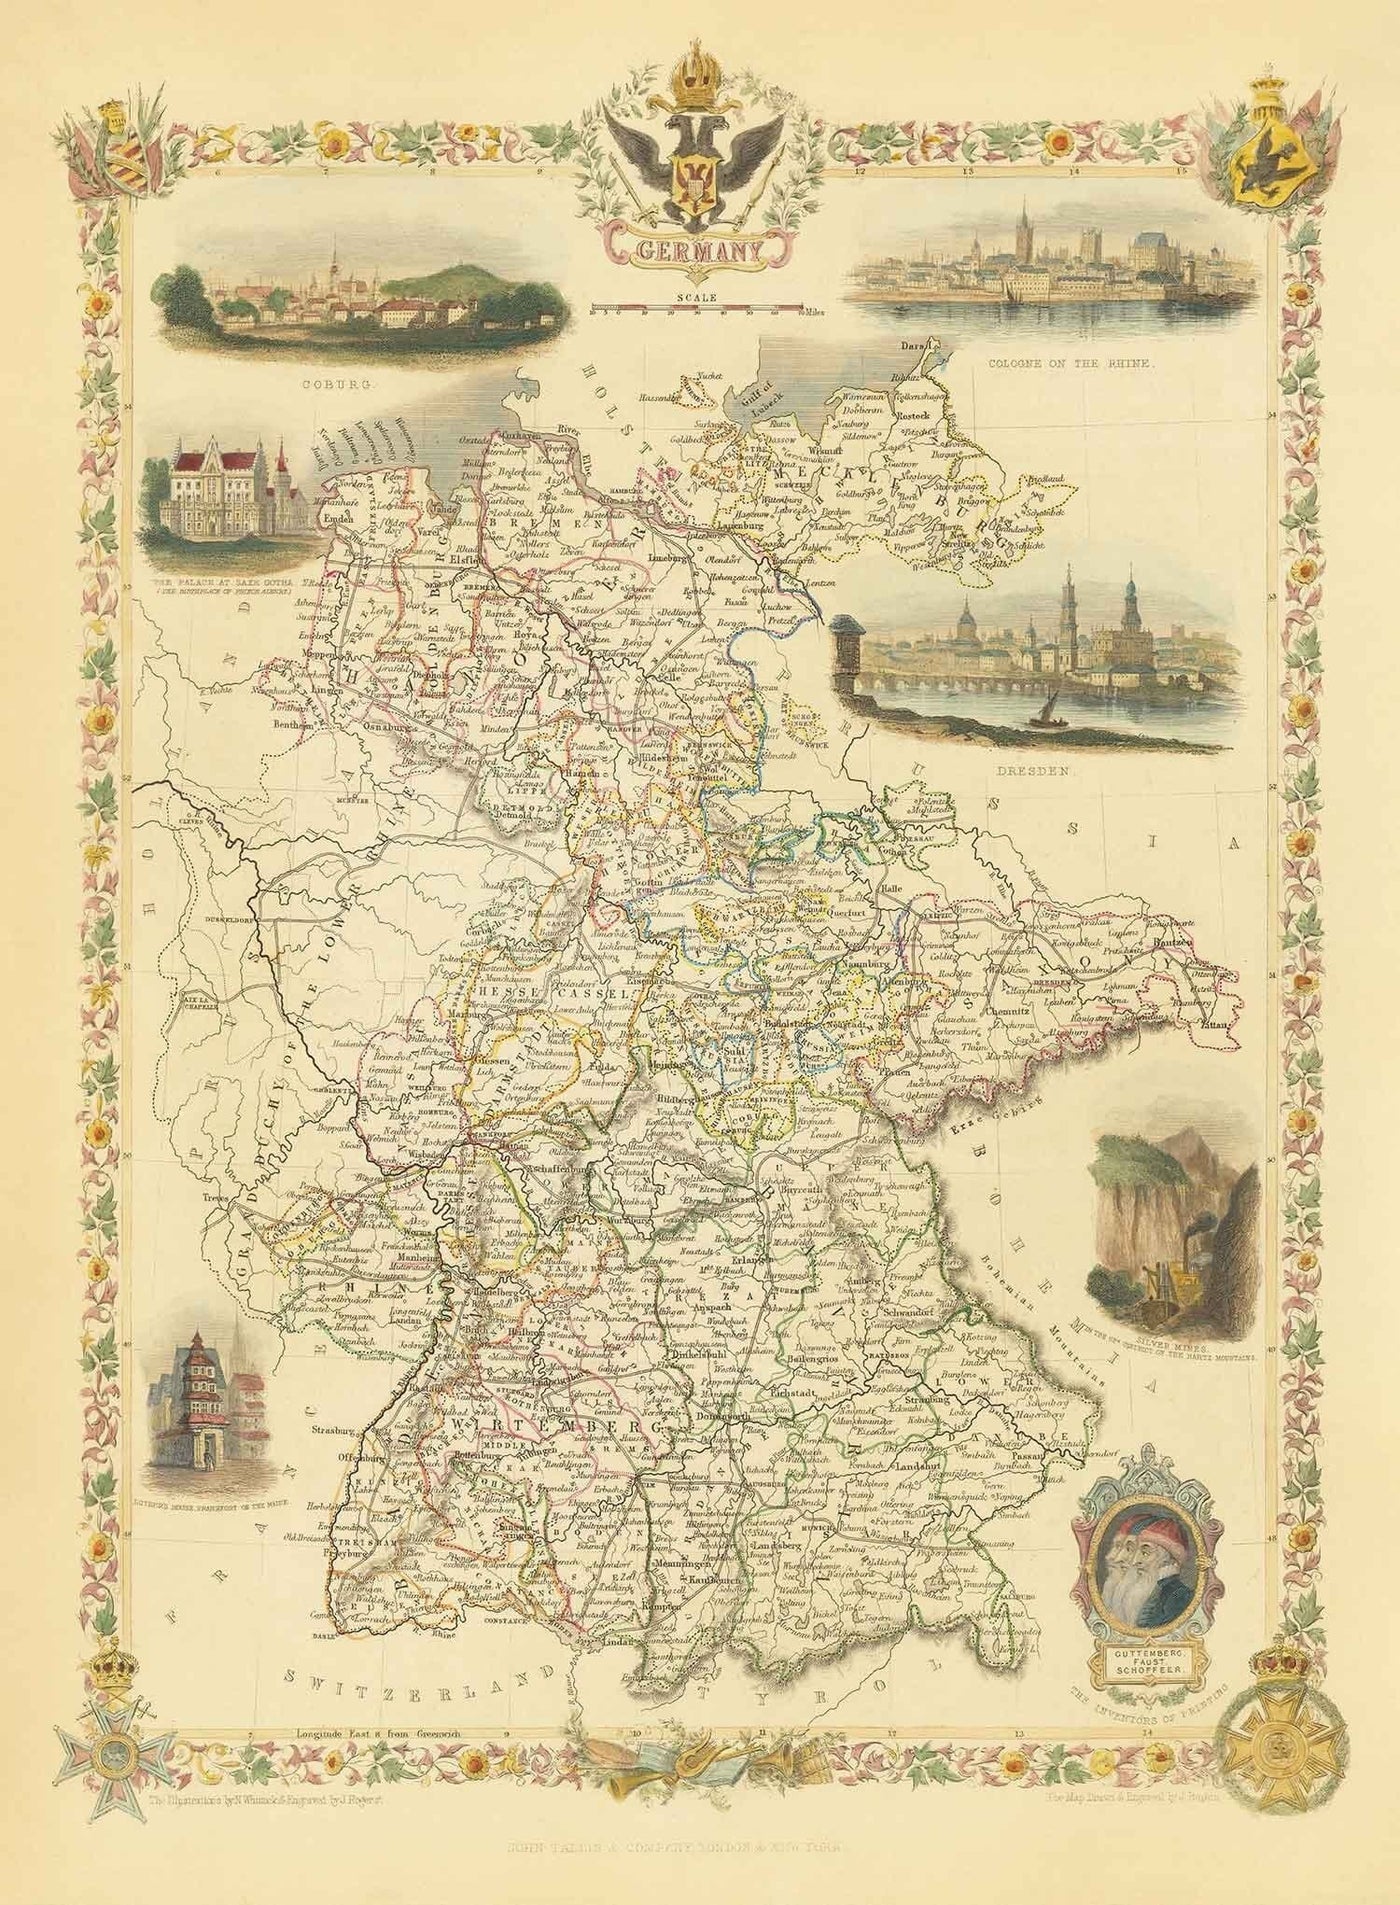 Antiguo mapa de Alemania, 1851 - Pre-Unificación, Pre-Reich Deutschland, Santo Imperio Romano, Estados, Ducados